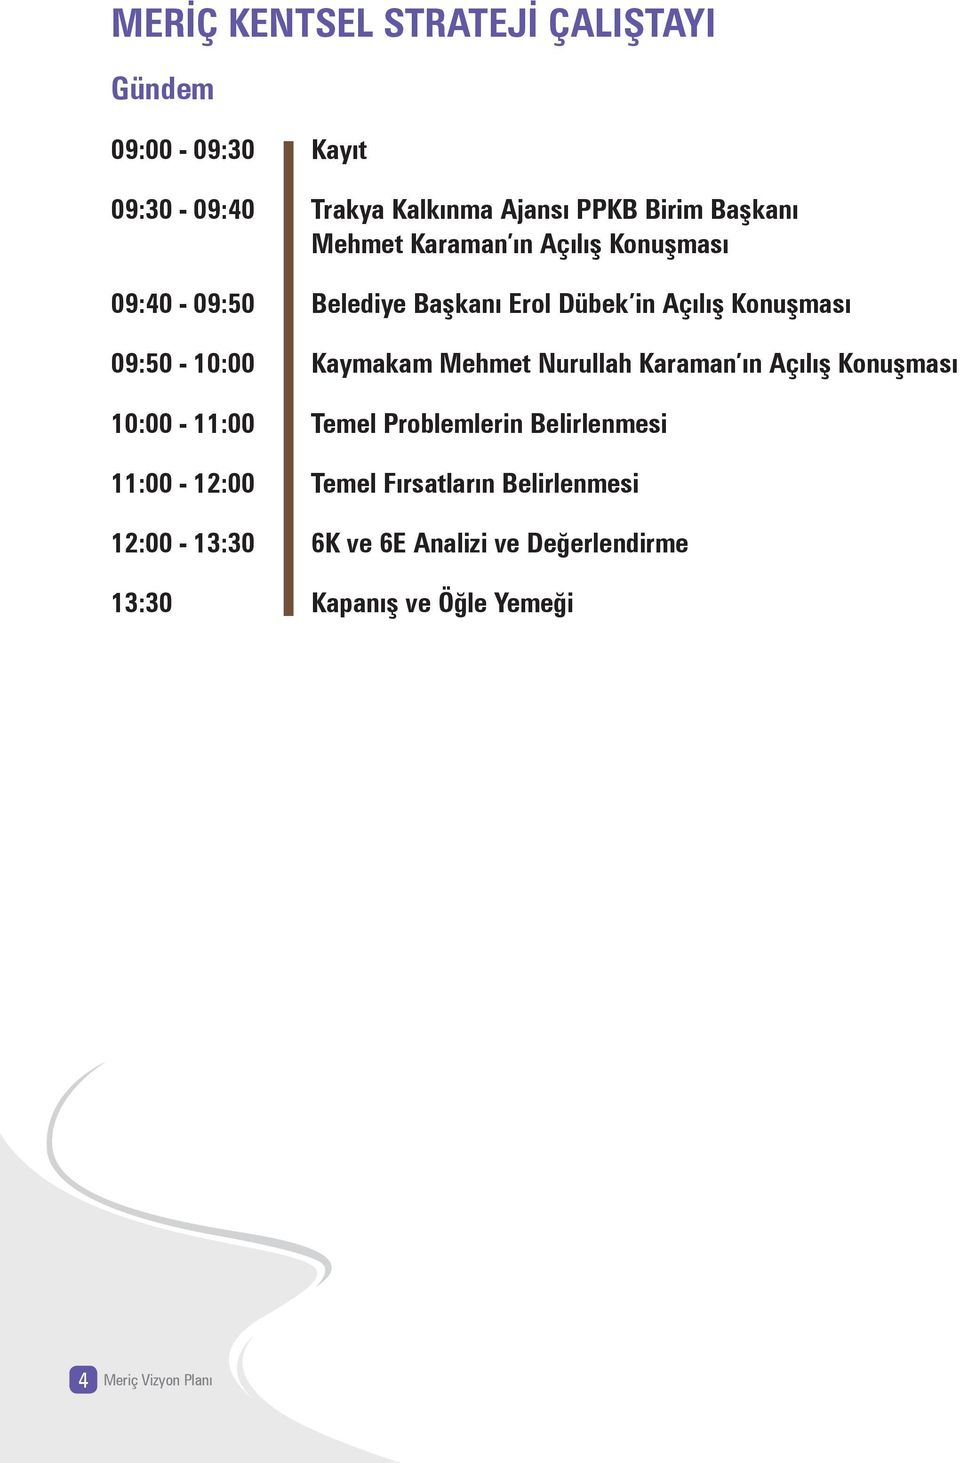 Kaymakam Mehmet Nurullah Karaman ın Açılış Konuşması 10:00-11:00 Temel Problemlerin Belirlenmesi 11:00-12:00